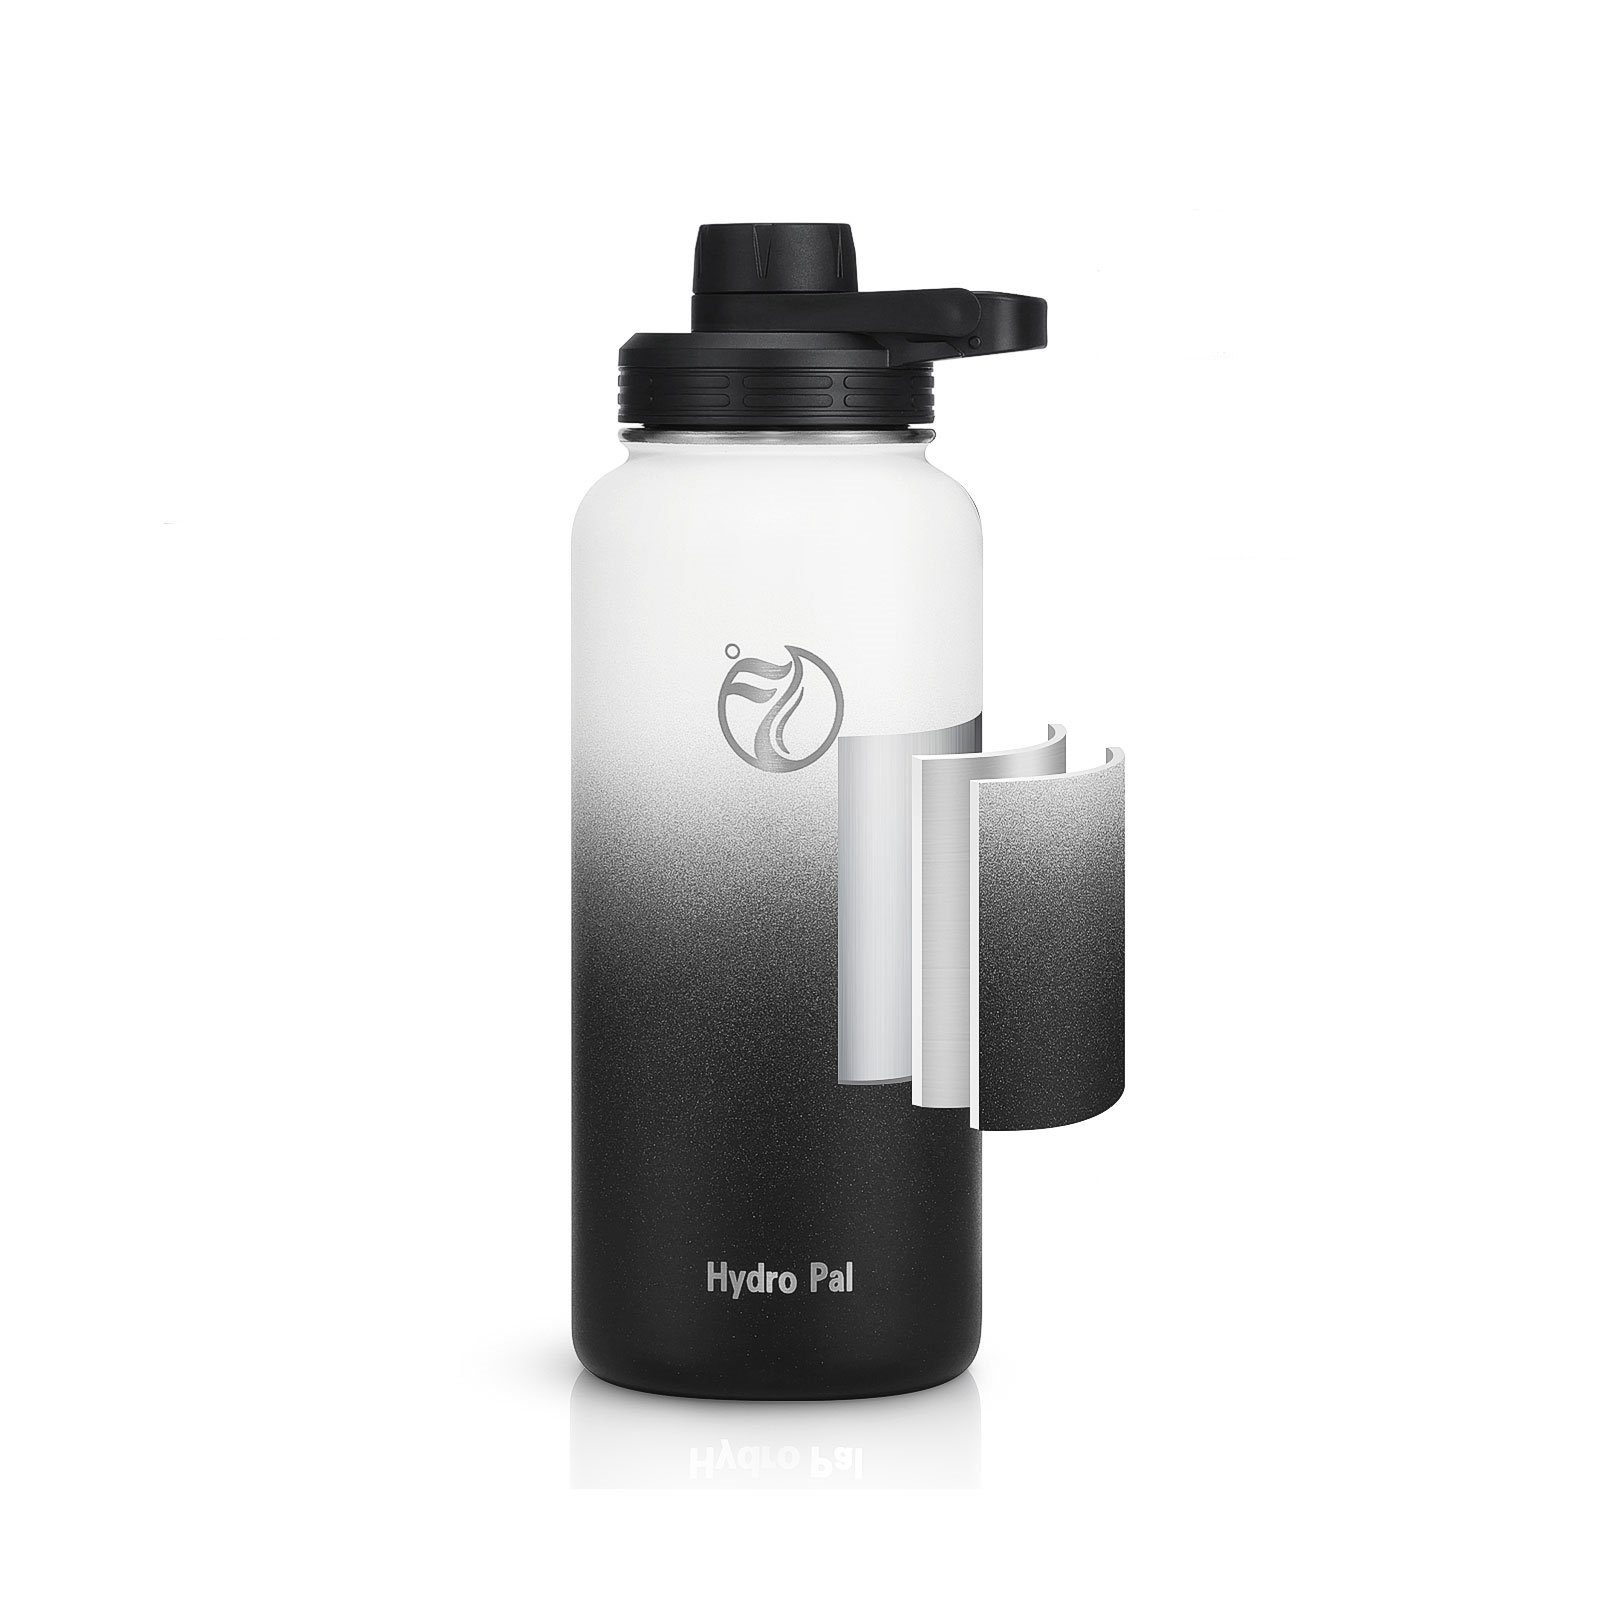 OKWISH Isolierflasche Thermosflasche Liter Trinkflasche Strohhalm Weiß/Grau geeignet Edelstahl, BPA-Frei 1L Isolierte Wasserflasche Auslaufsicher Deckel 2 2 1 Kohlensäure